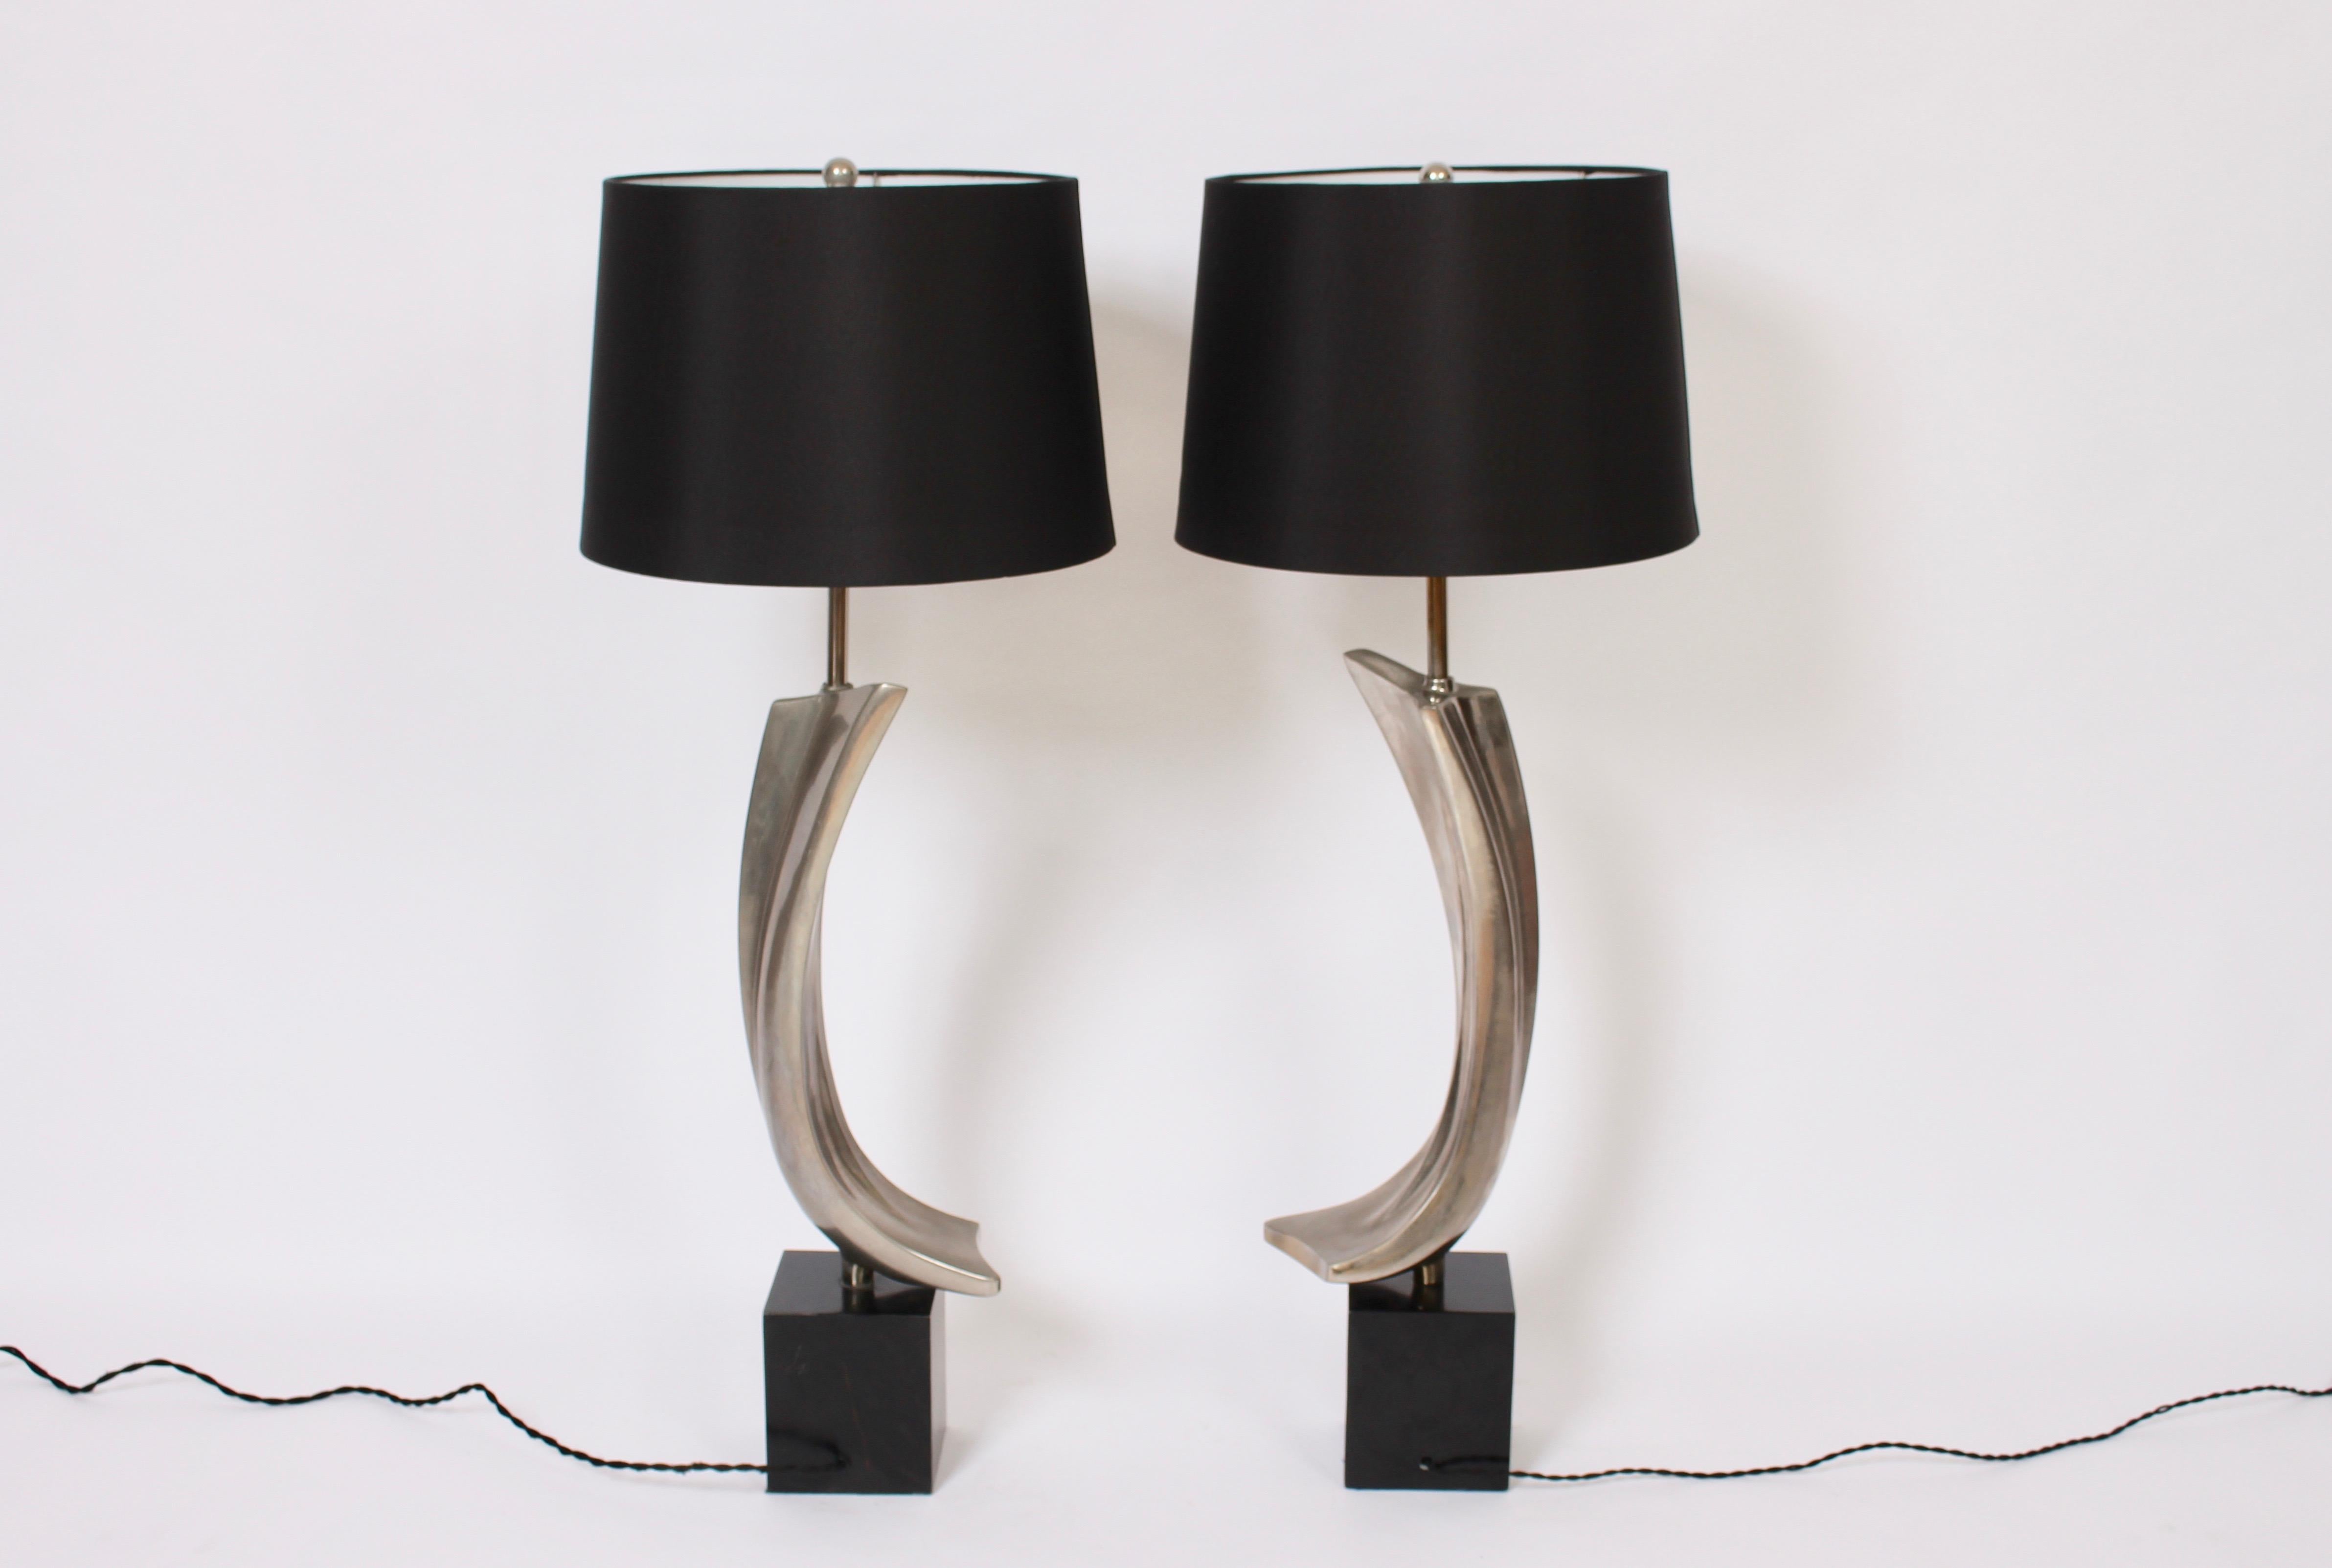 Importante paire de lampes de table Laurel Lamp Company H-1053 en métal chromé avec base en métal noir. Circa 1970. Formes élancées et incurvées en métal nickelé sur des bases rectangulaires de 6